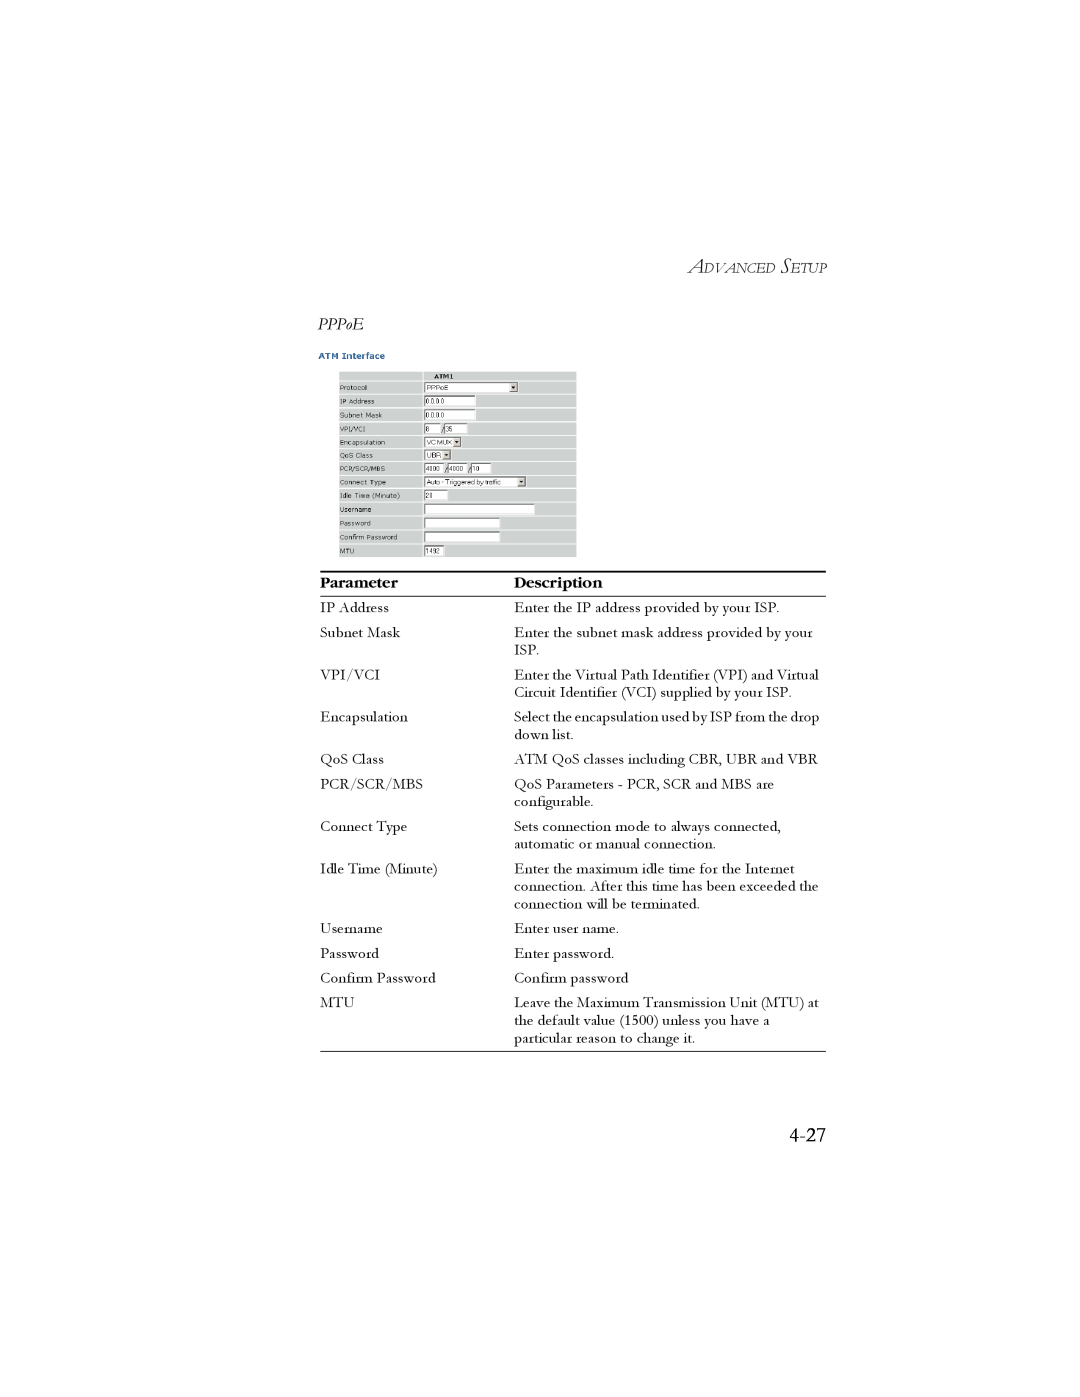 SMC Networks SMC7908VoWBRA manual 4-27, PPPoE, Parameter, Description 